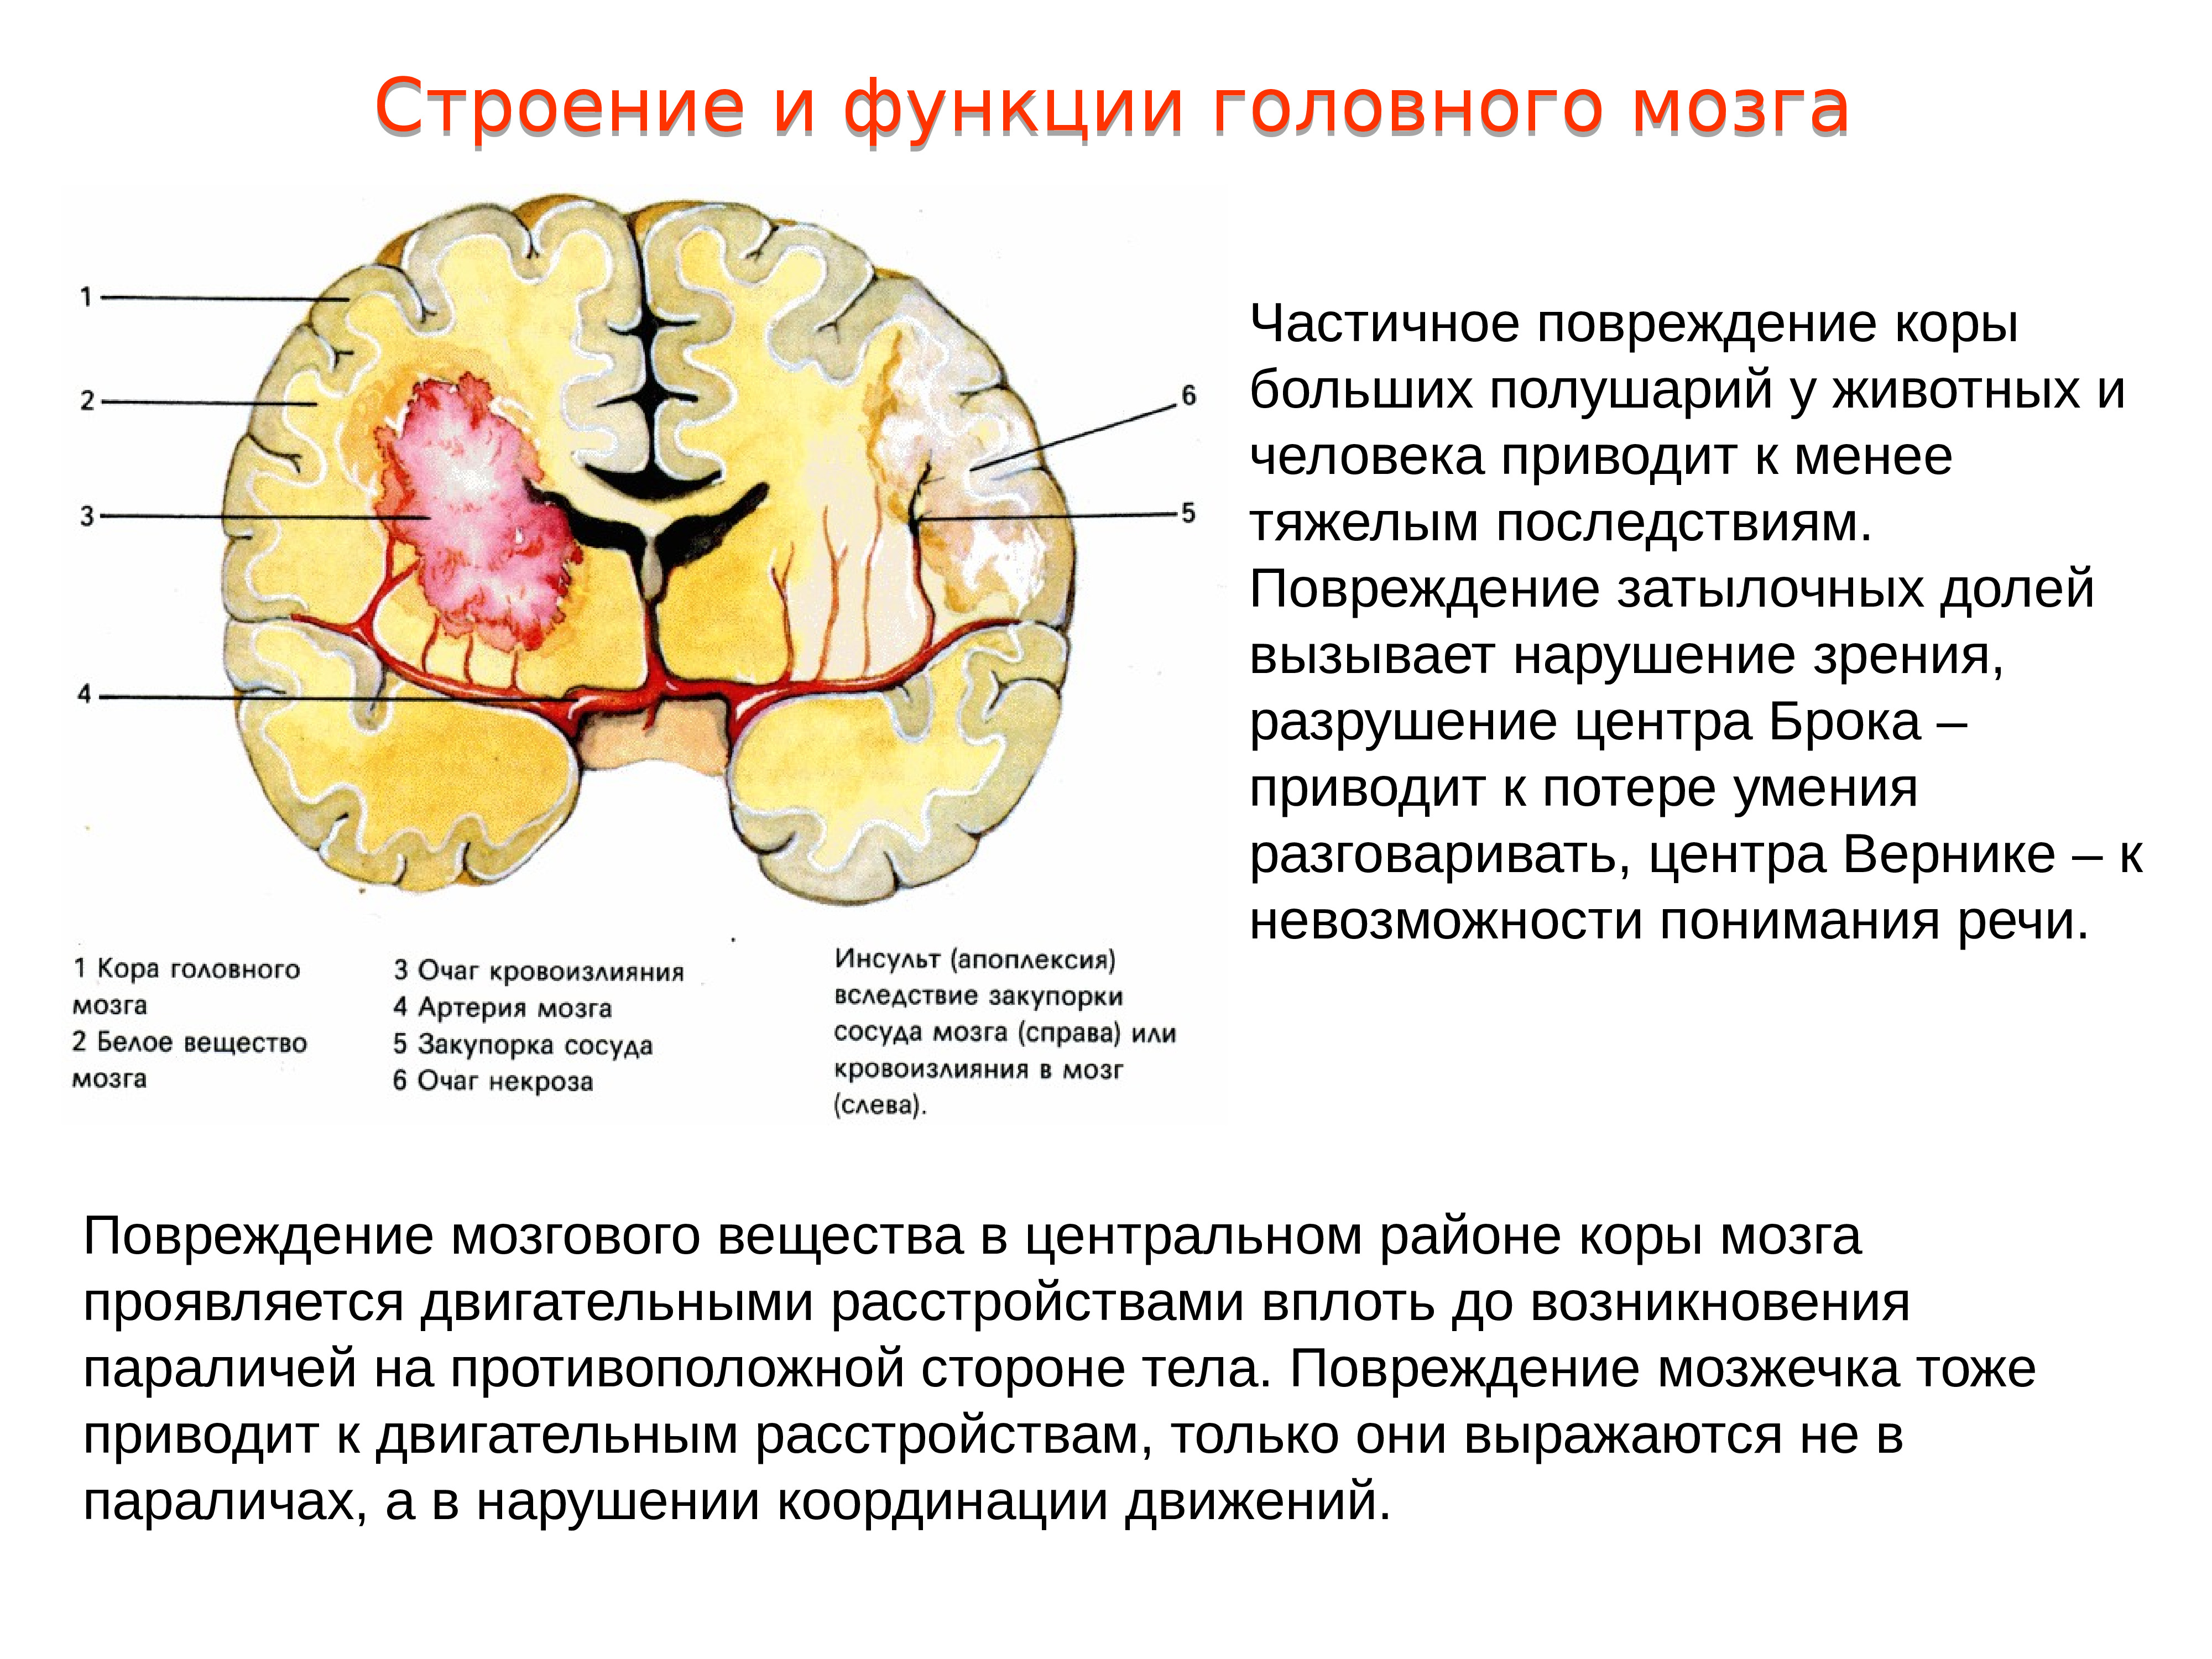 Функции затылочного мозга. Локальное повреждение коры головного мозга. Повреждения затылочной доли мозга. Повреждение коры больших полушарий головного мозга.